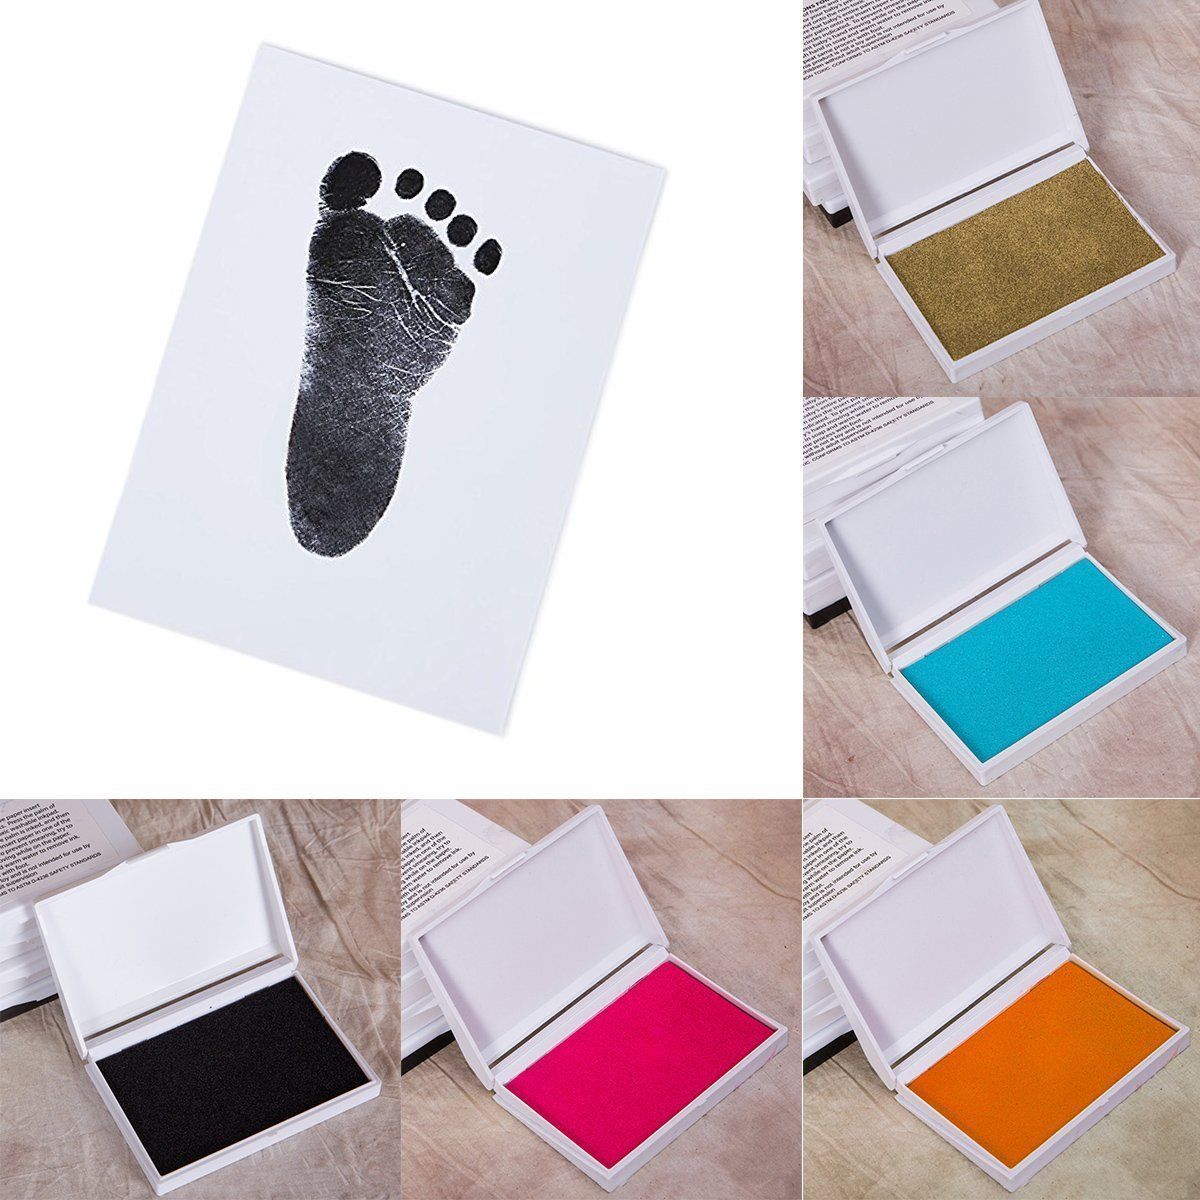 Baby sikker print blækpude hånd fodspor beslutningstagere fodspor håndprint sæt erindring maker maker minder diy